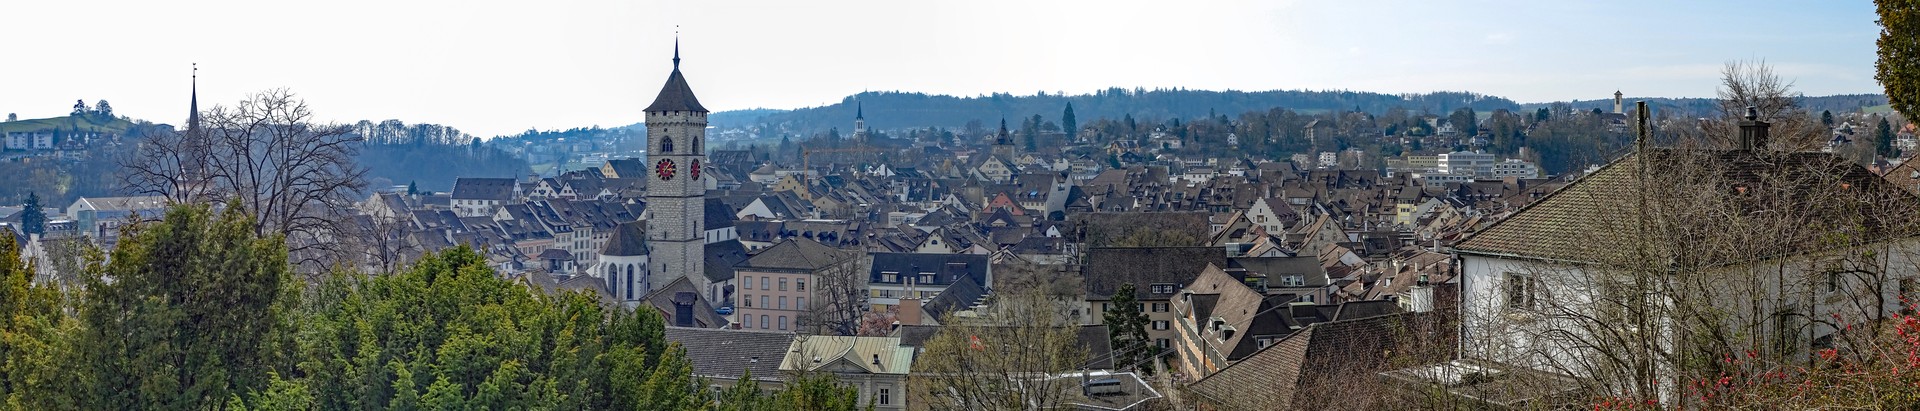 Panorama der Altstadt Schaffhausen 5 Bilder